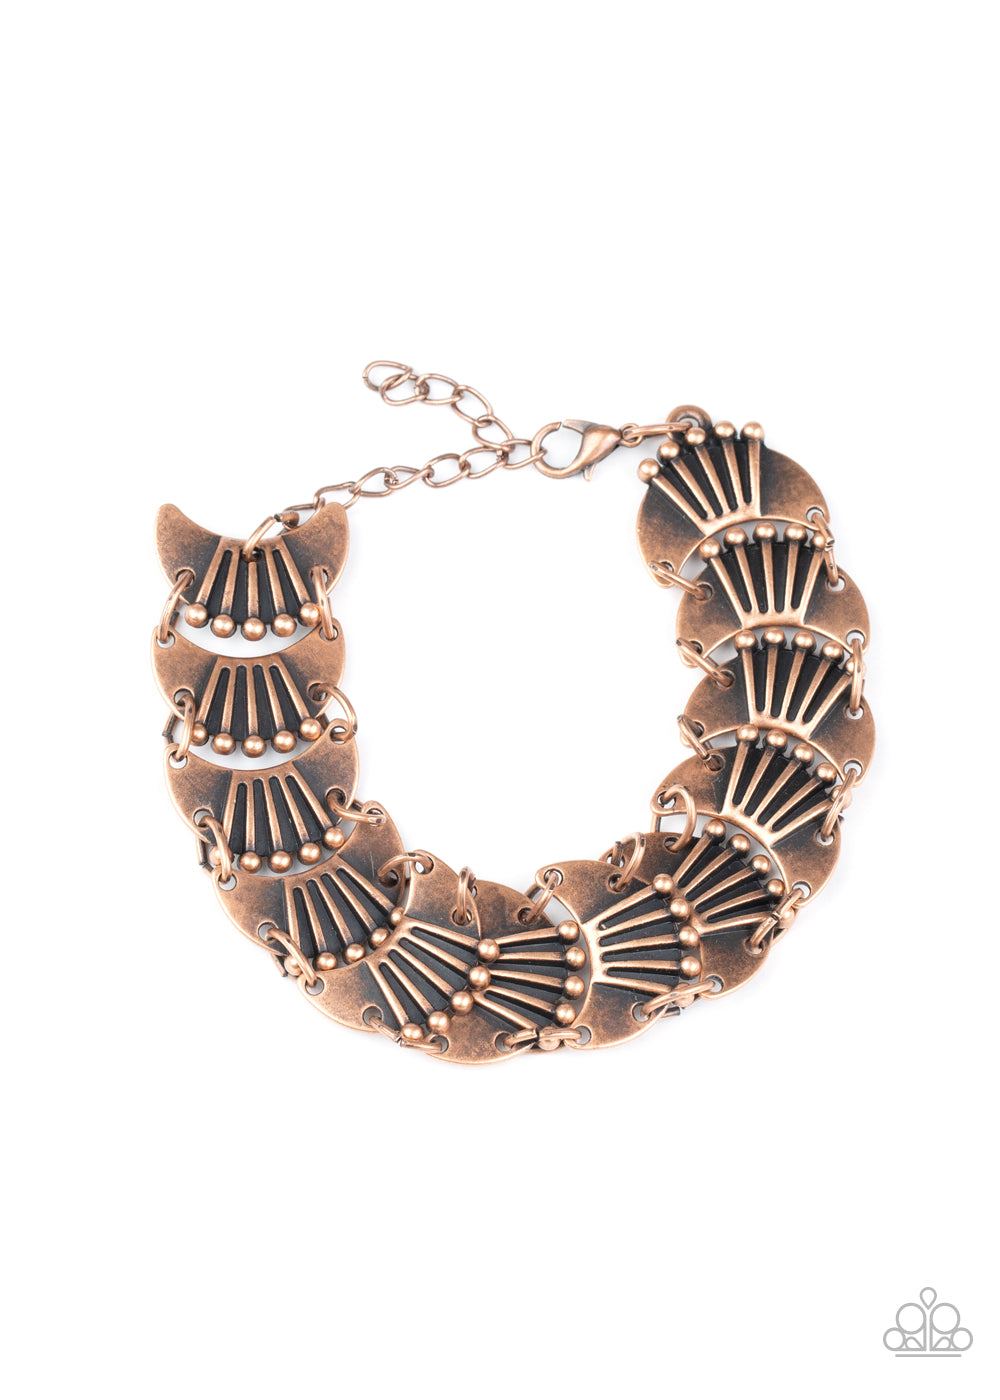 Moonlit Mesa Copper Bracelet - Paparazzi Accessories